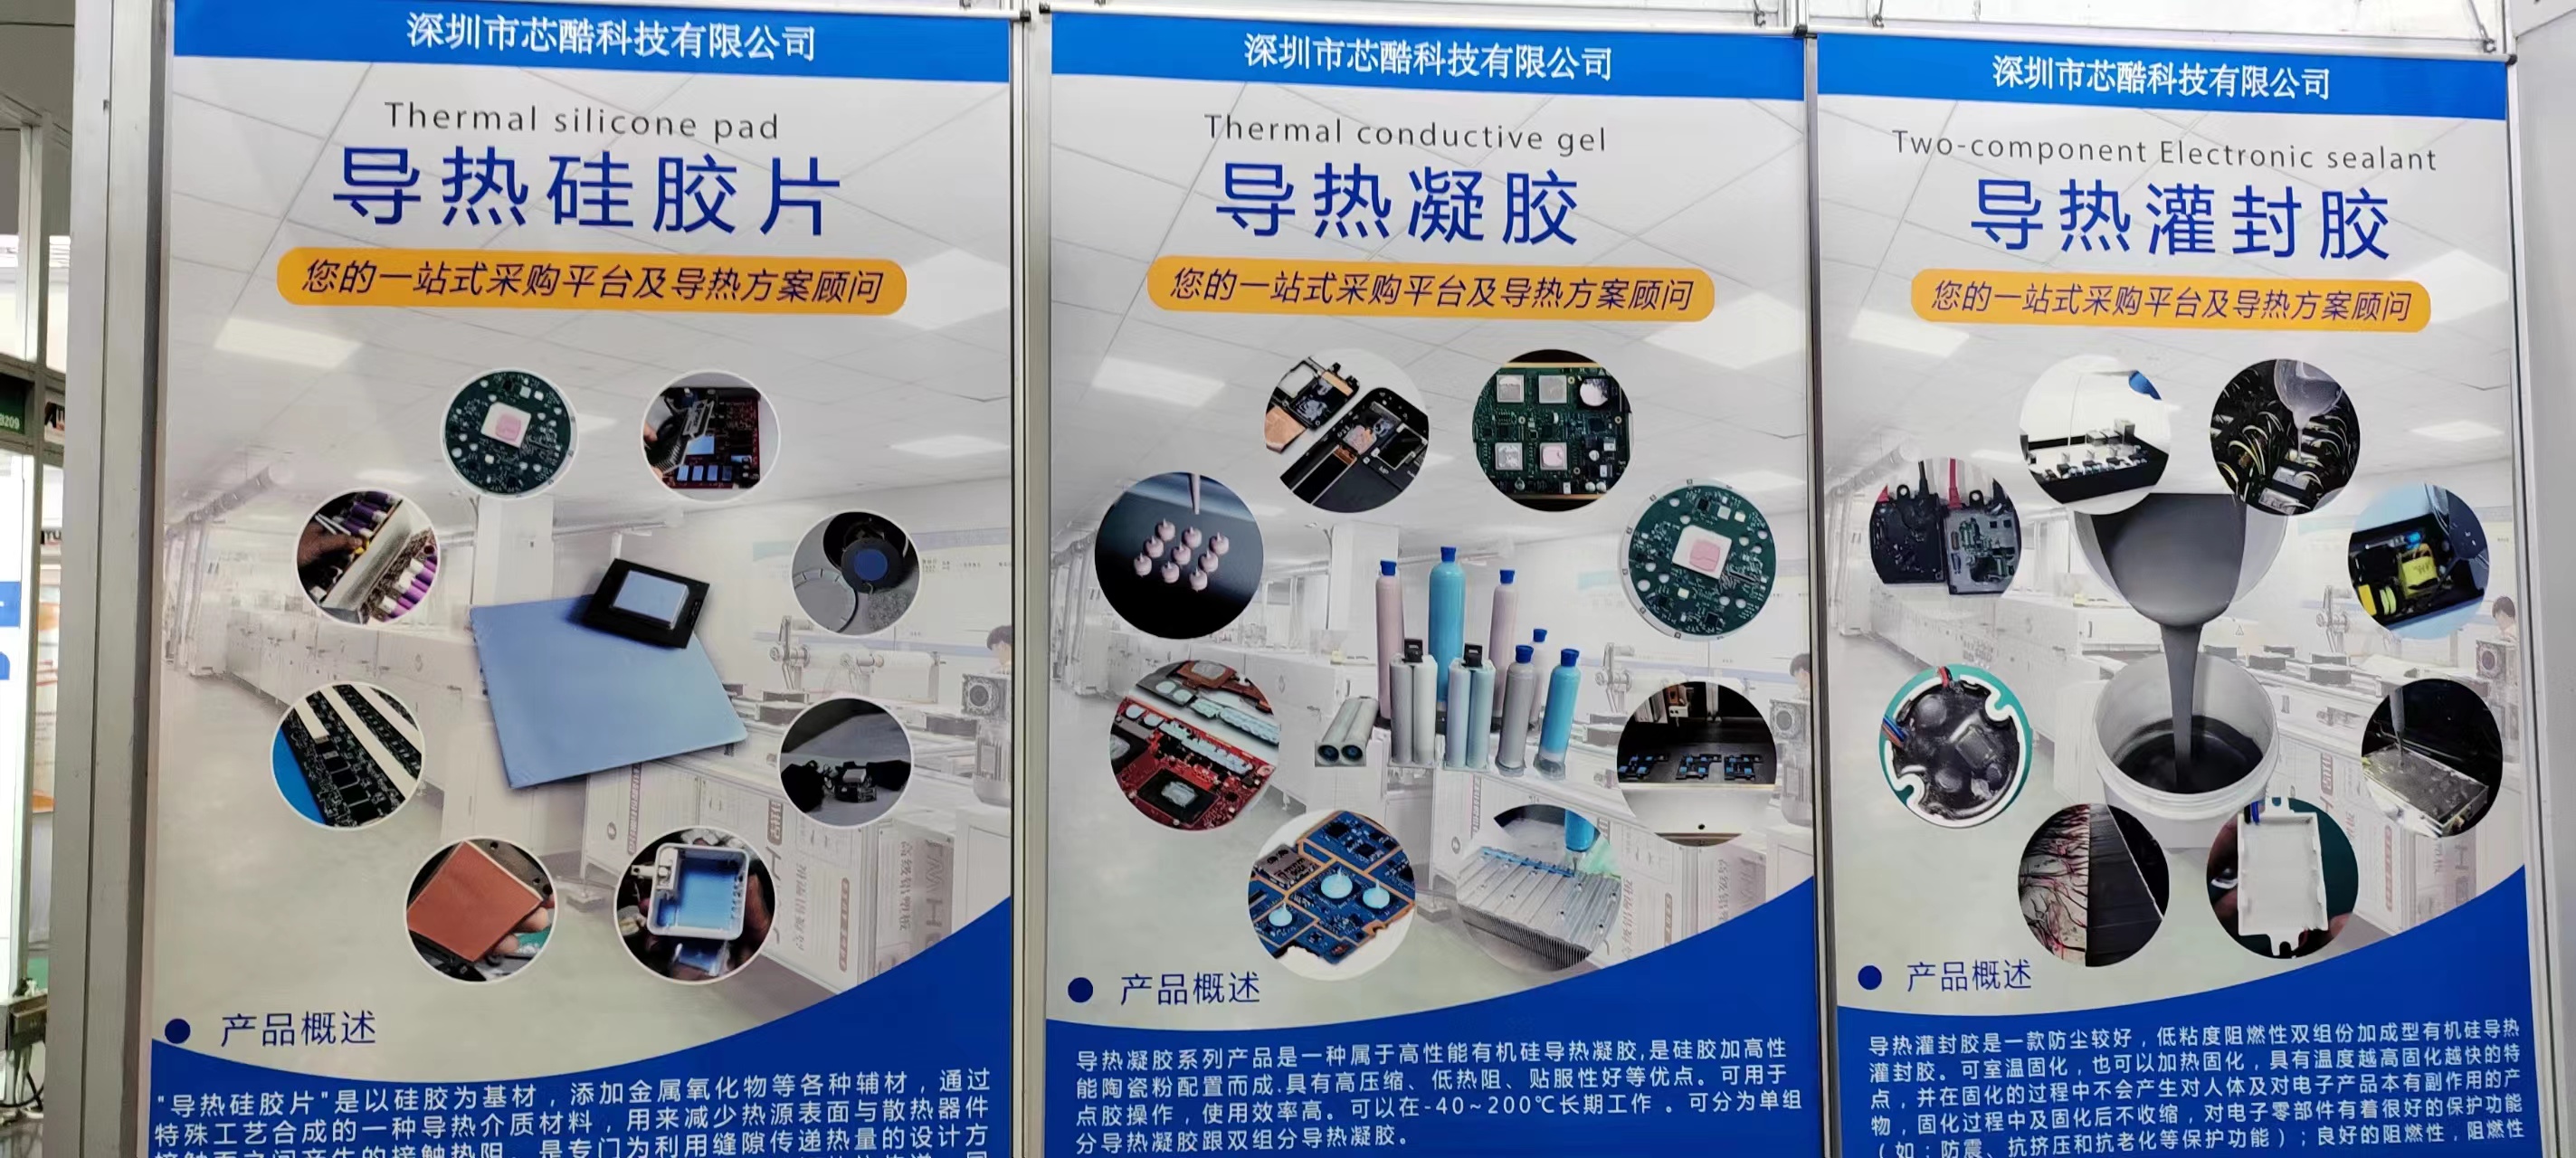 芯酷科技亮相国际电子电路（深圳）展览会